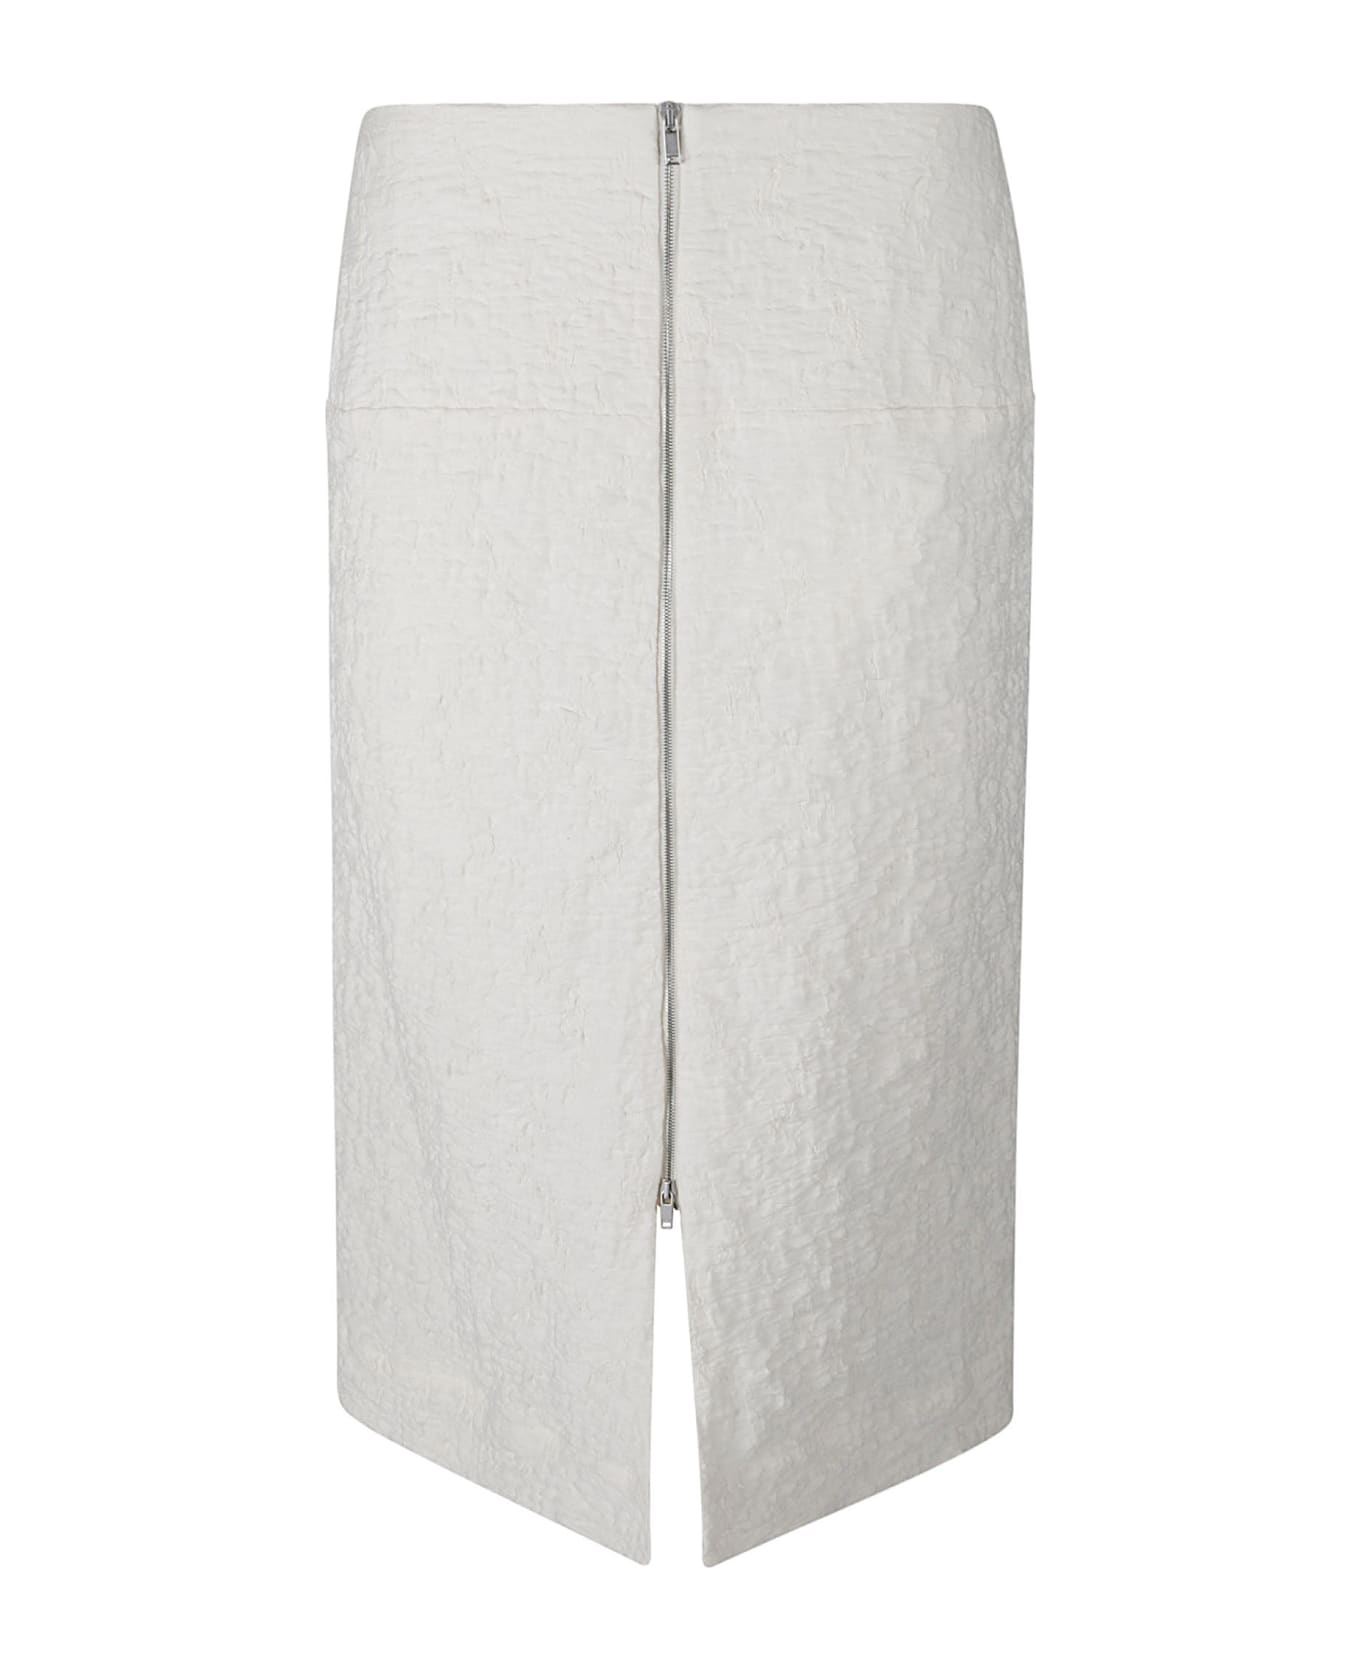 Jil Sander White Cotton Blend Skirt - Natural